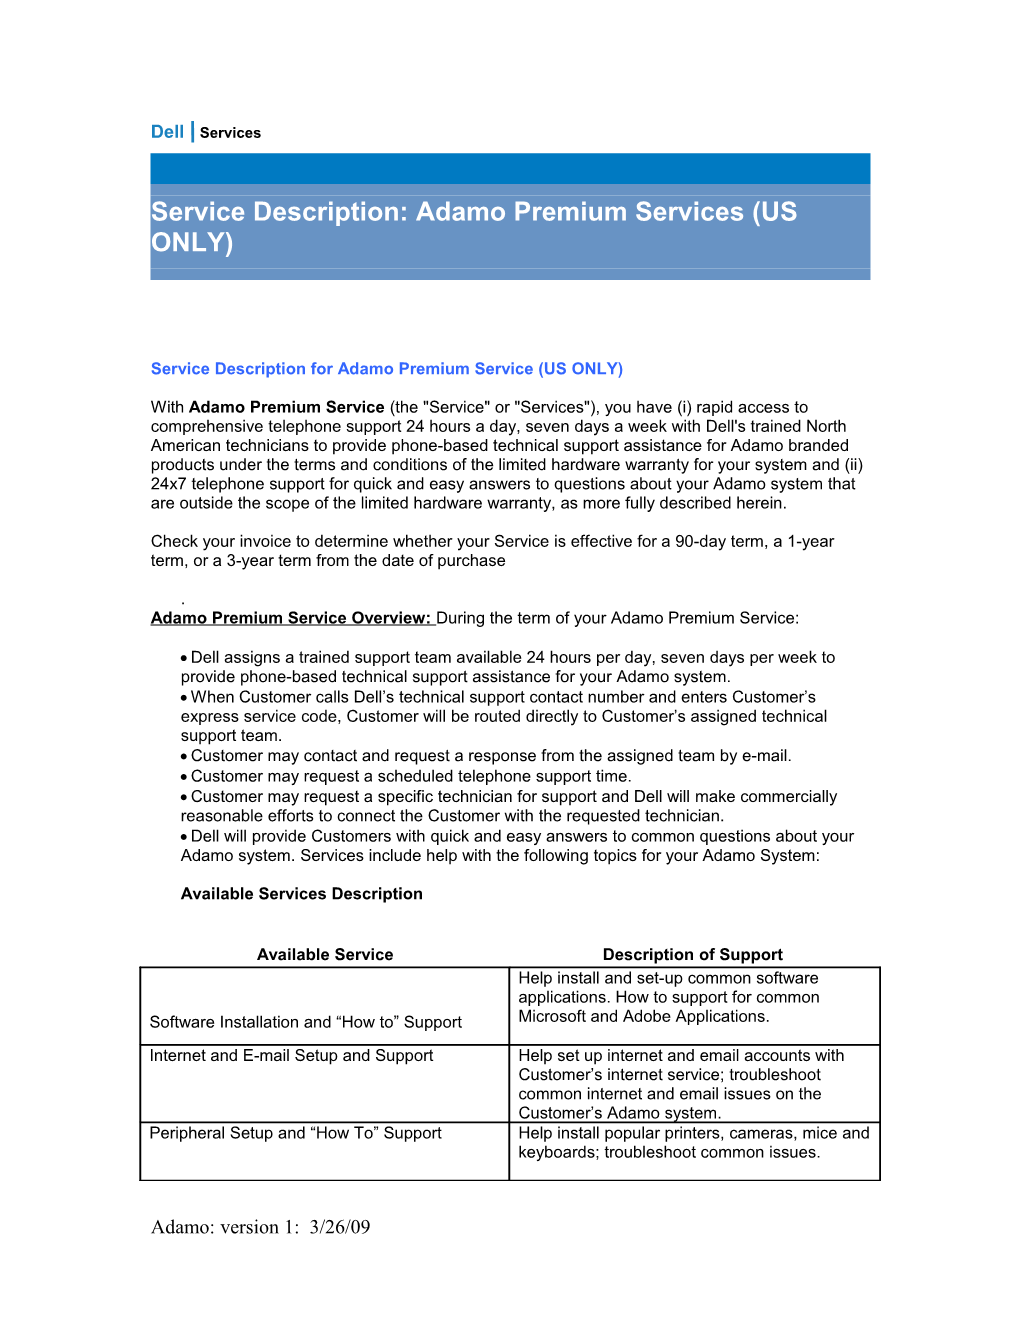 Service Description: Adamo Premium Services (US ONLY)